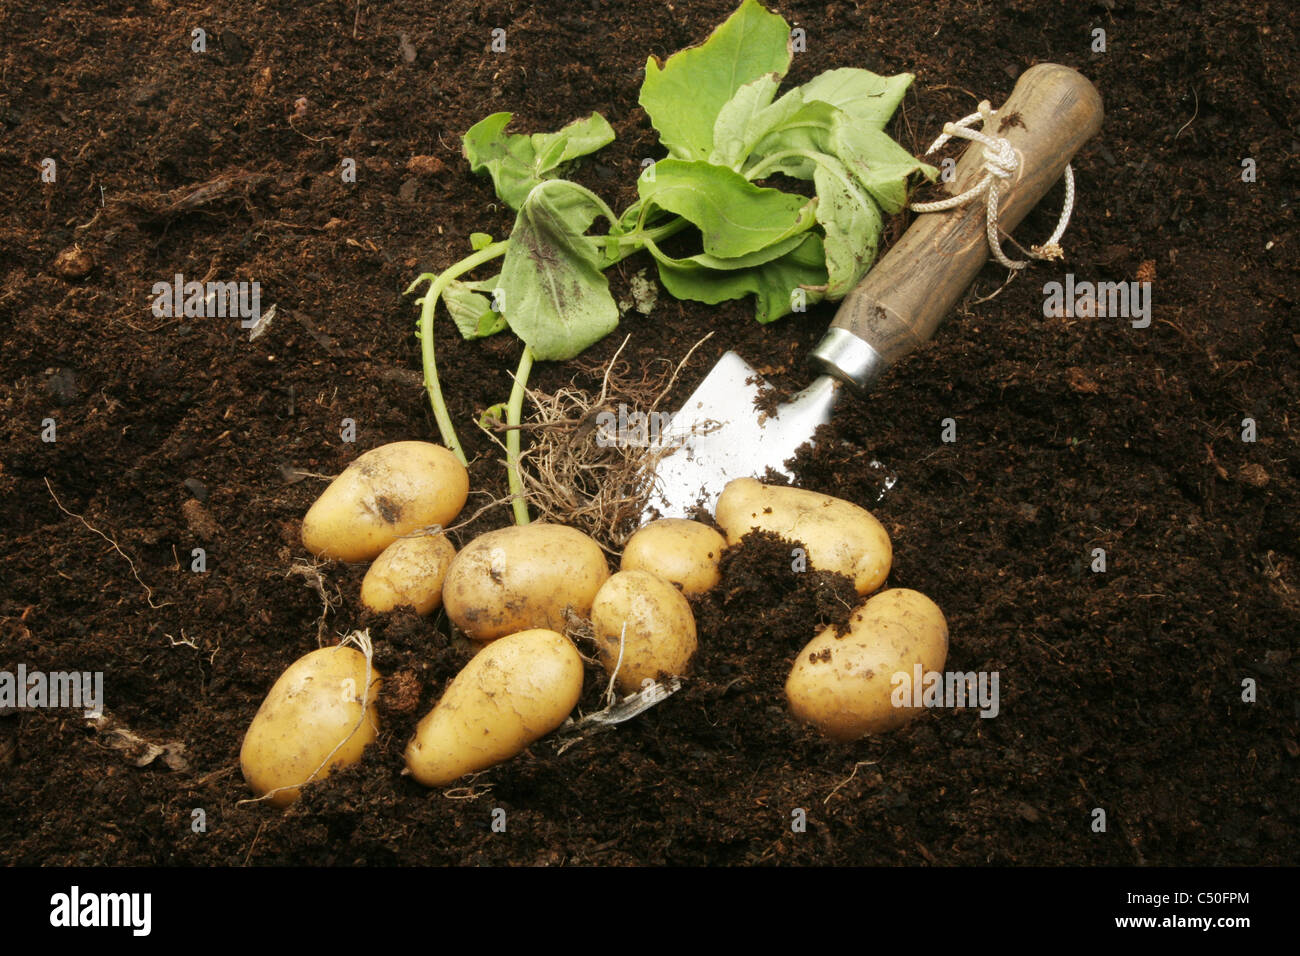 Les pommes de terre nouvelles fraîchement creusé avec les racines et le feuillage dans le sol avec une truelle de jardin Banque D'Images